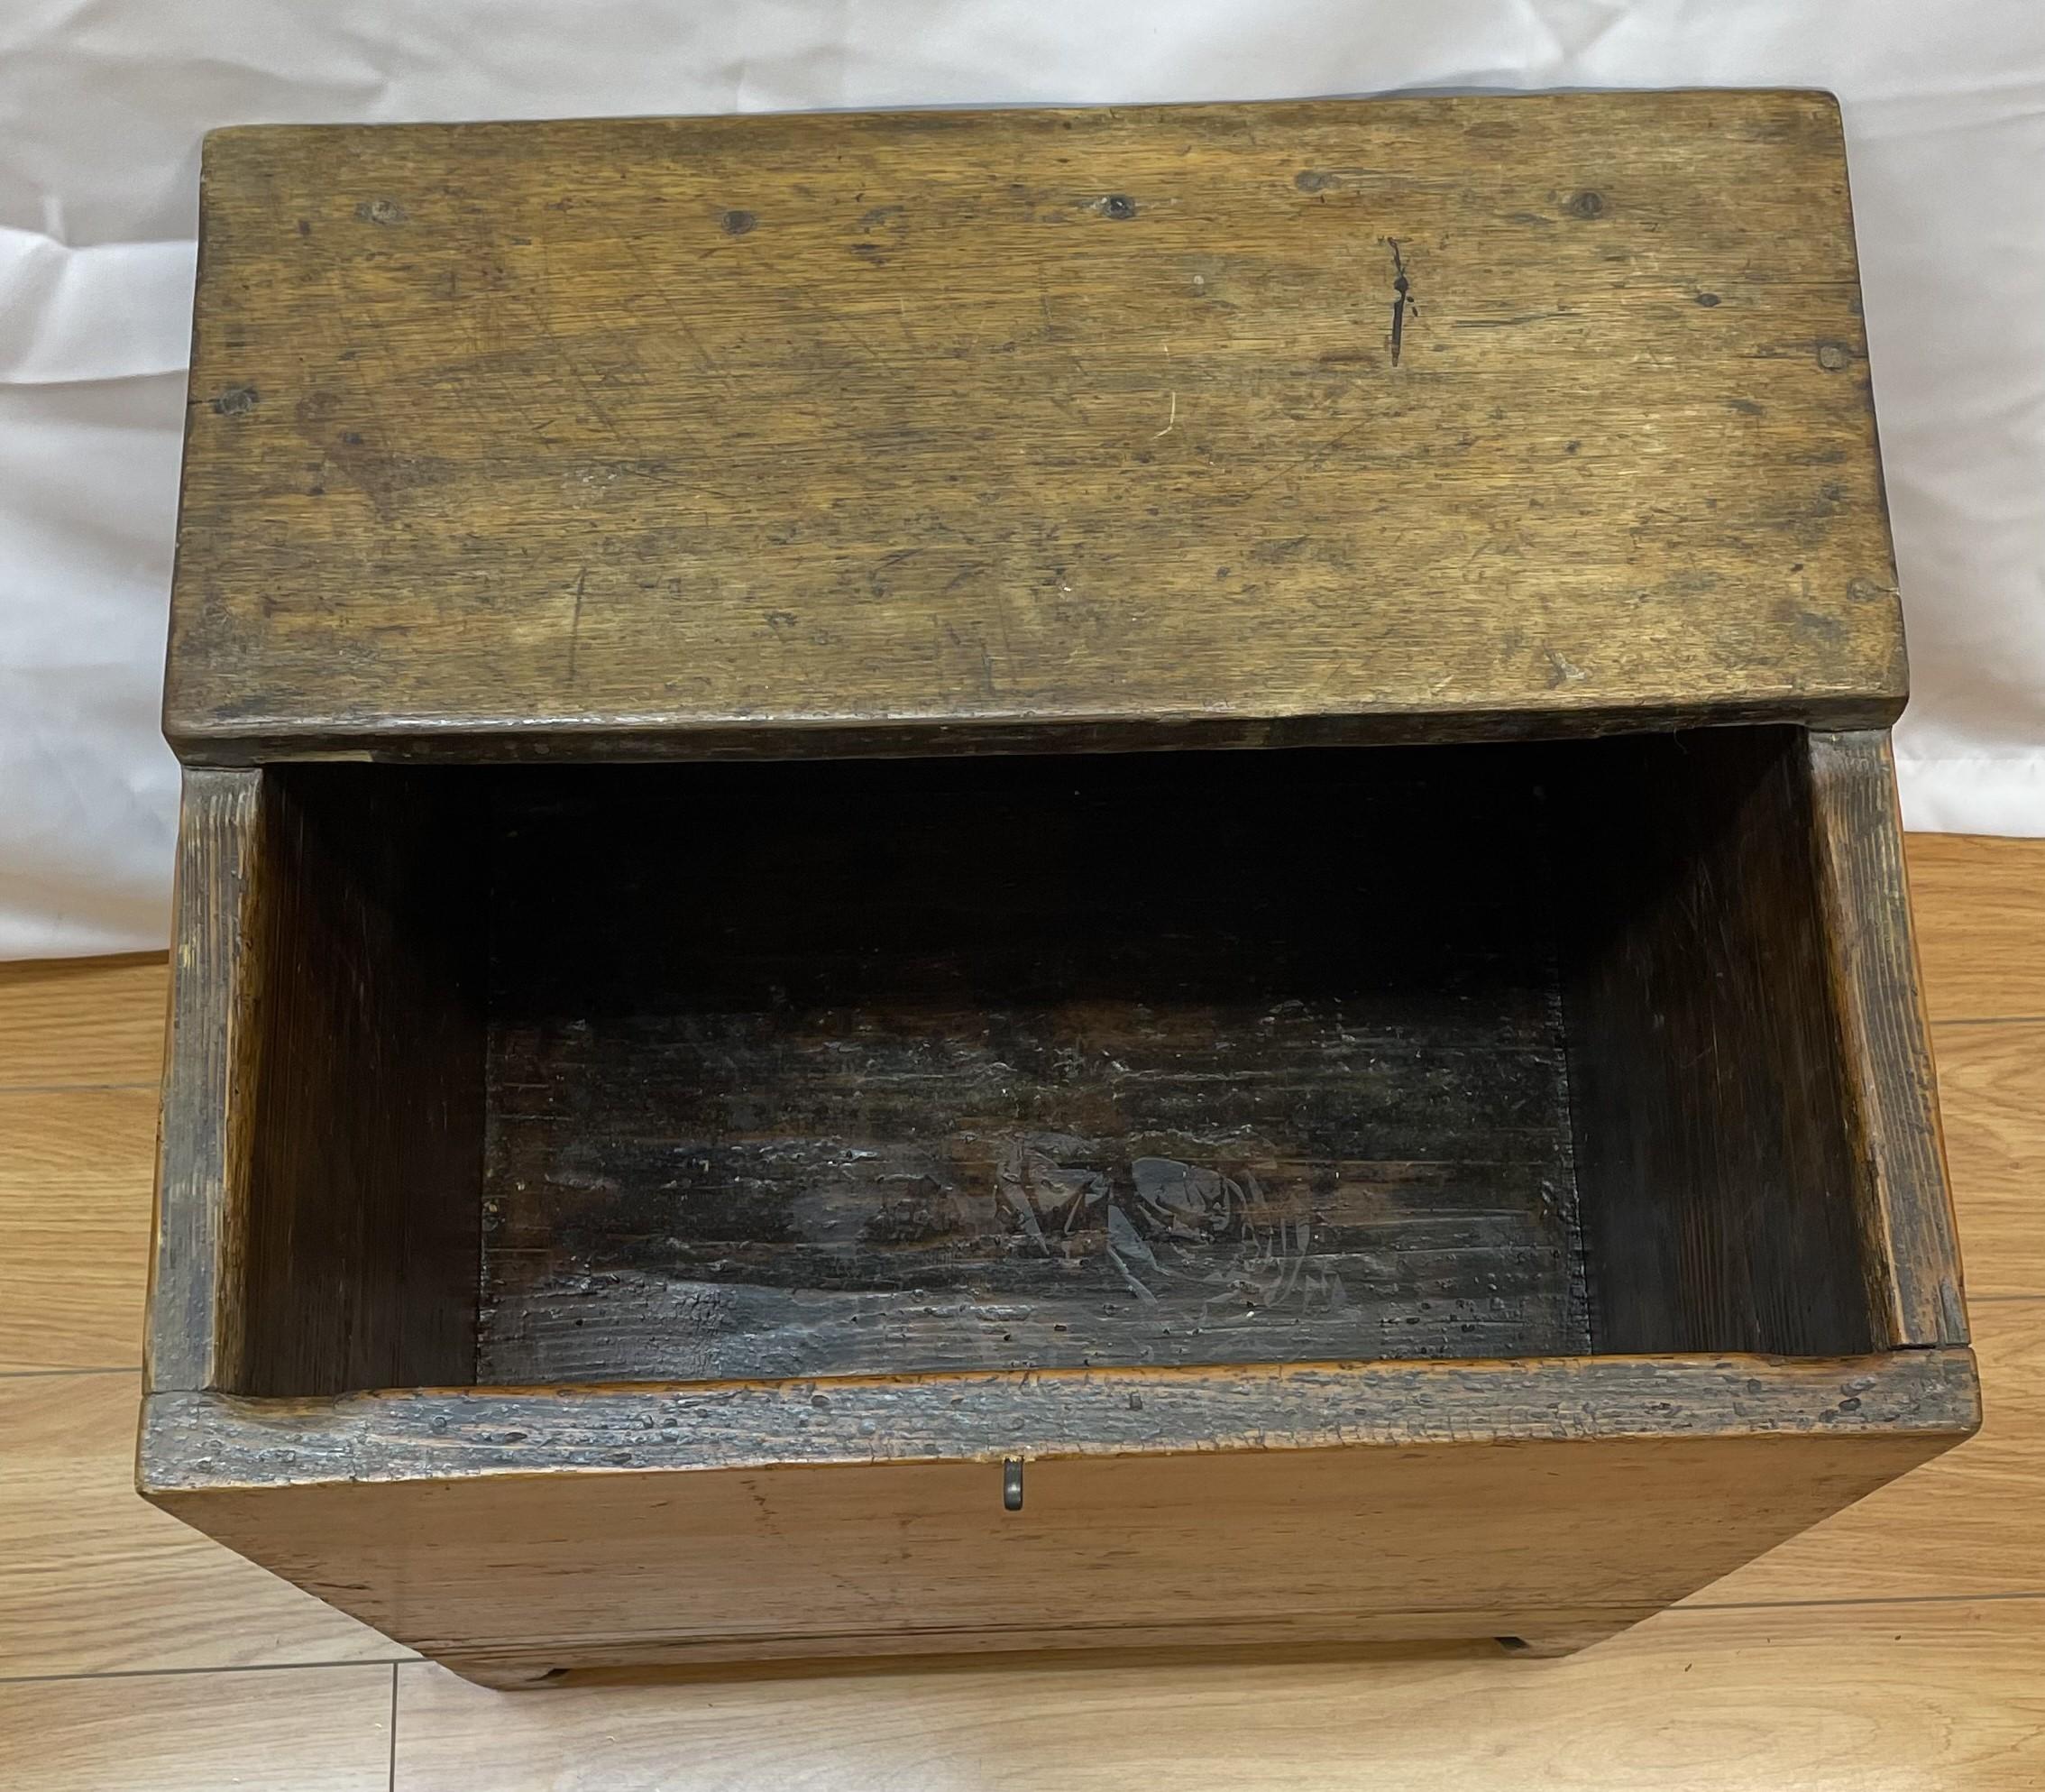 18th - 19th century sugar chest

20 x 17 x 23